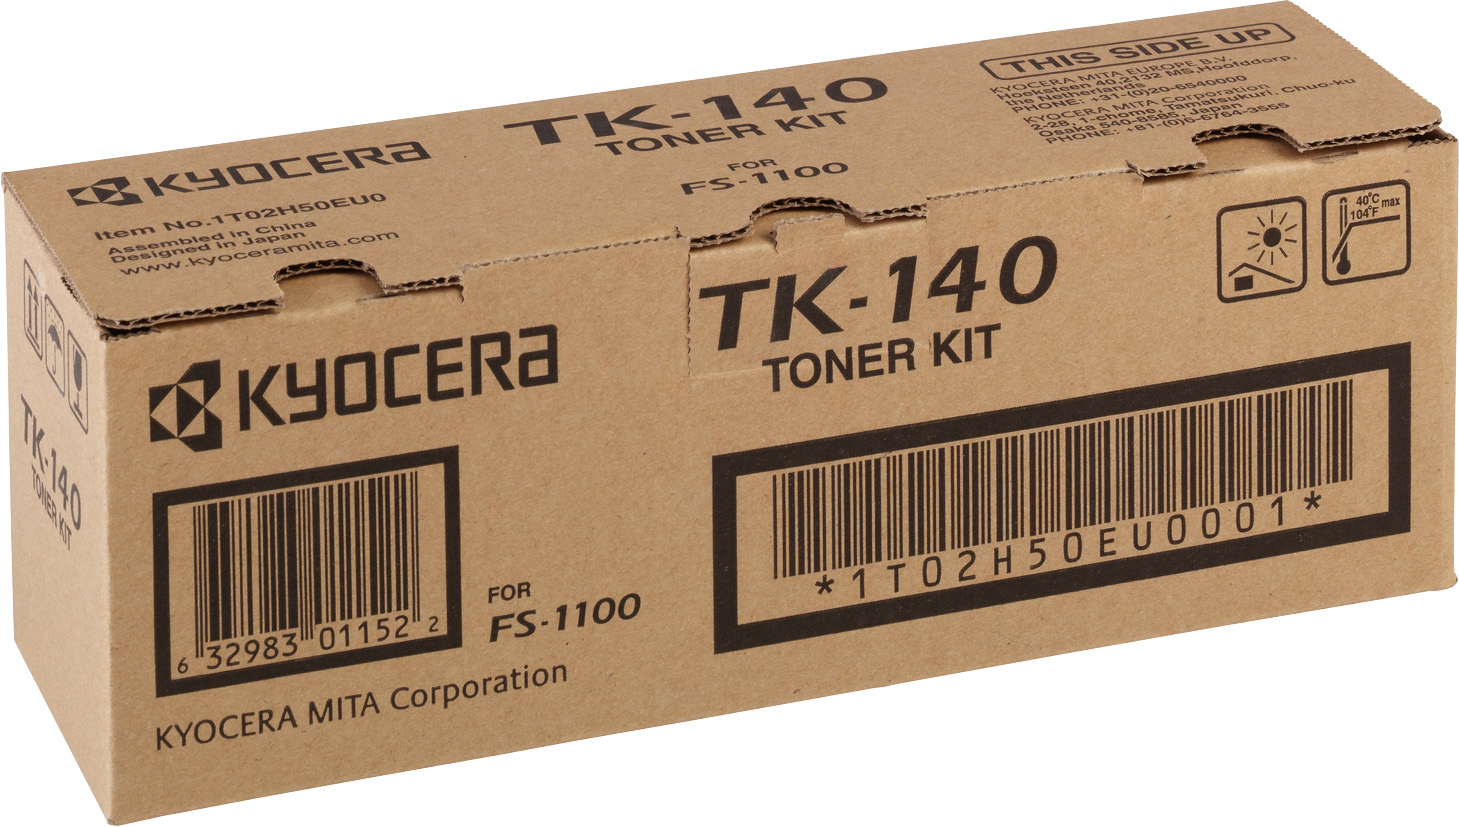 Kyocera Lasertoner TK-140 schwarz 4.000 Seiten